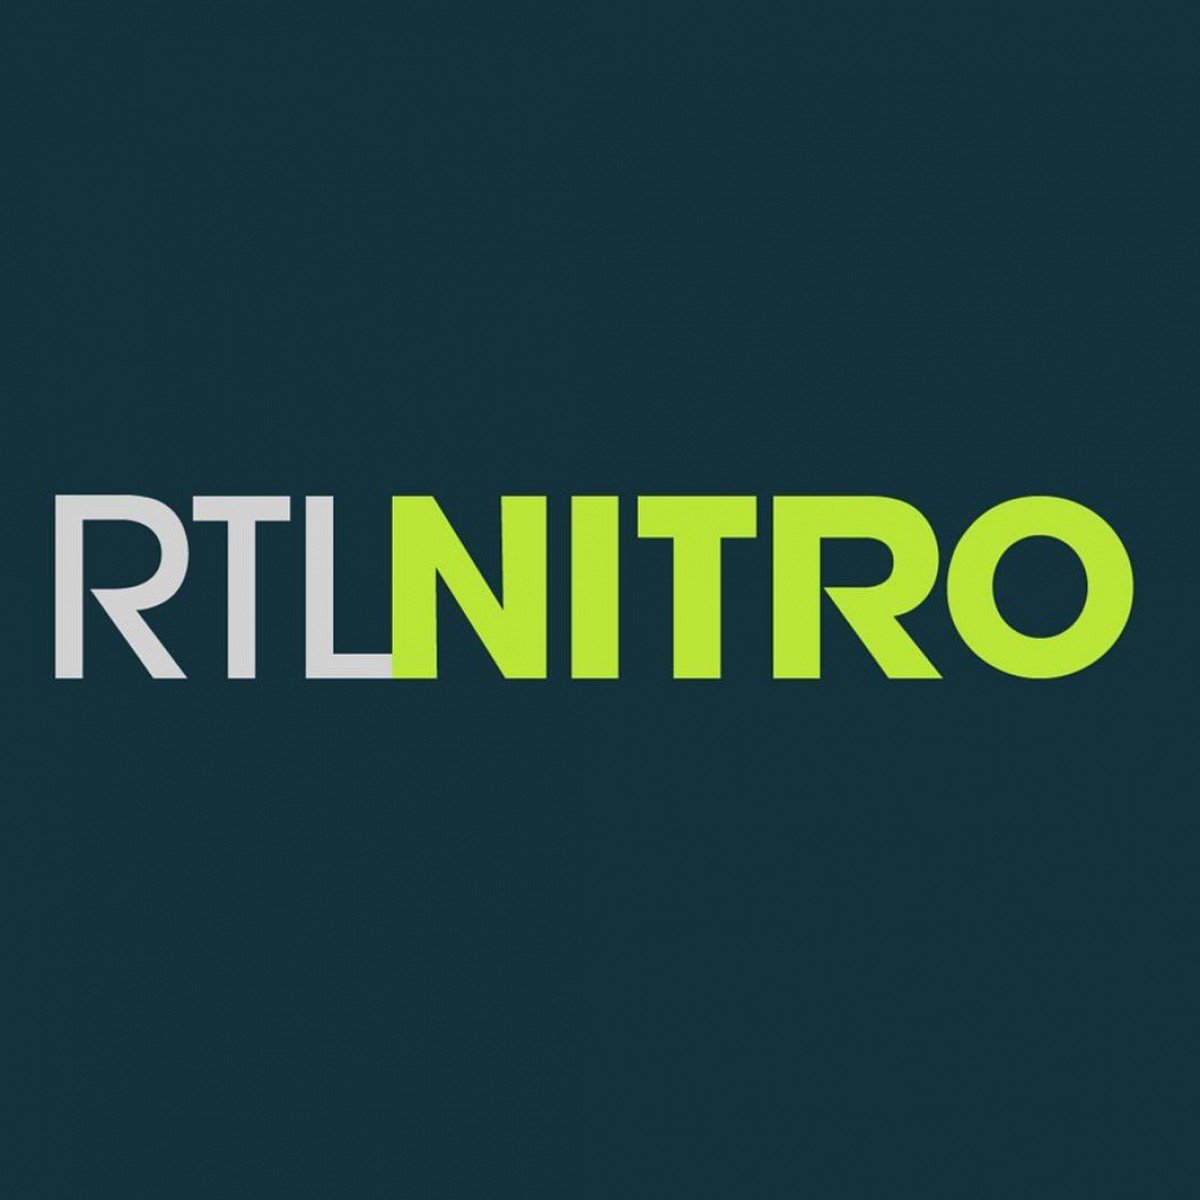 Profilo RTL Nitro Canale Tv